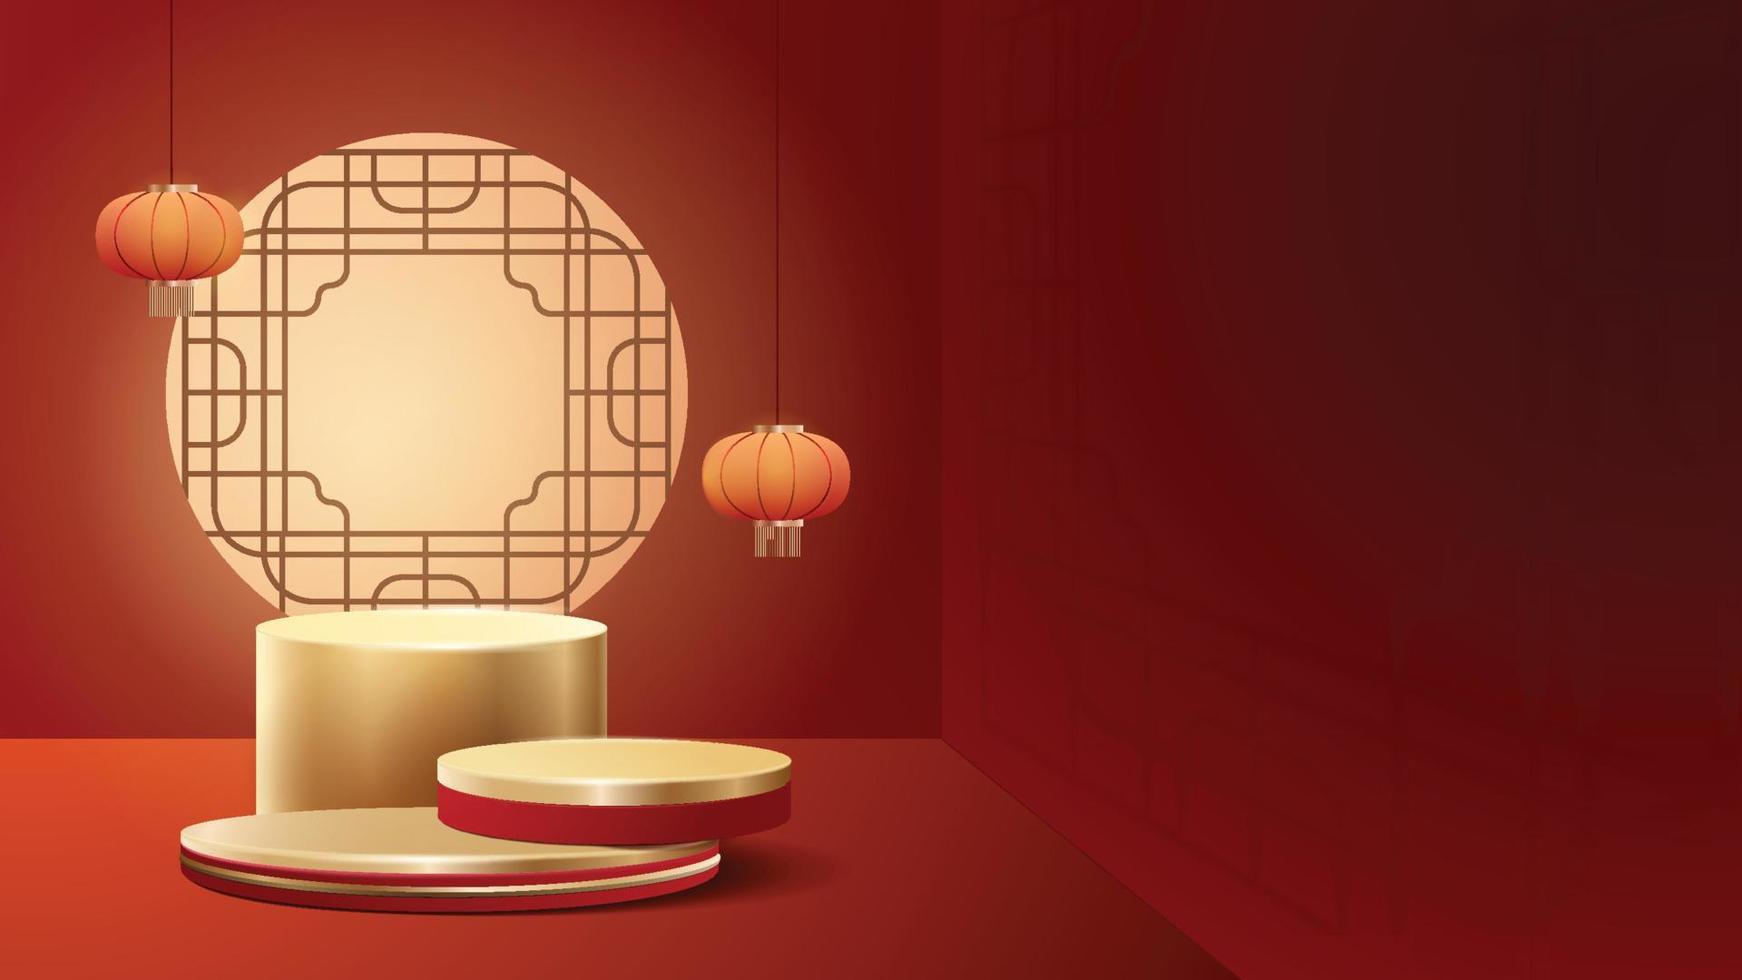 cena simulada mínima abstrata. pódio para mostrar a exibição do produto. pedestal de palco ou plataforma. fundo vermelho e dourado do ano novo chinês. Vetor 3d